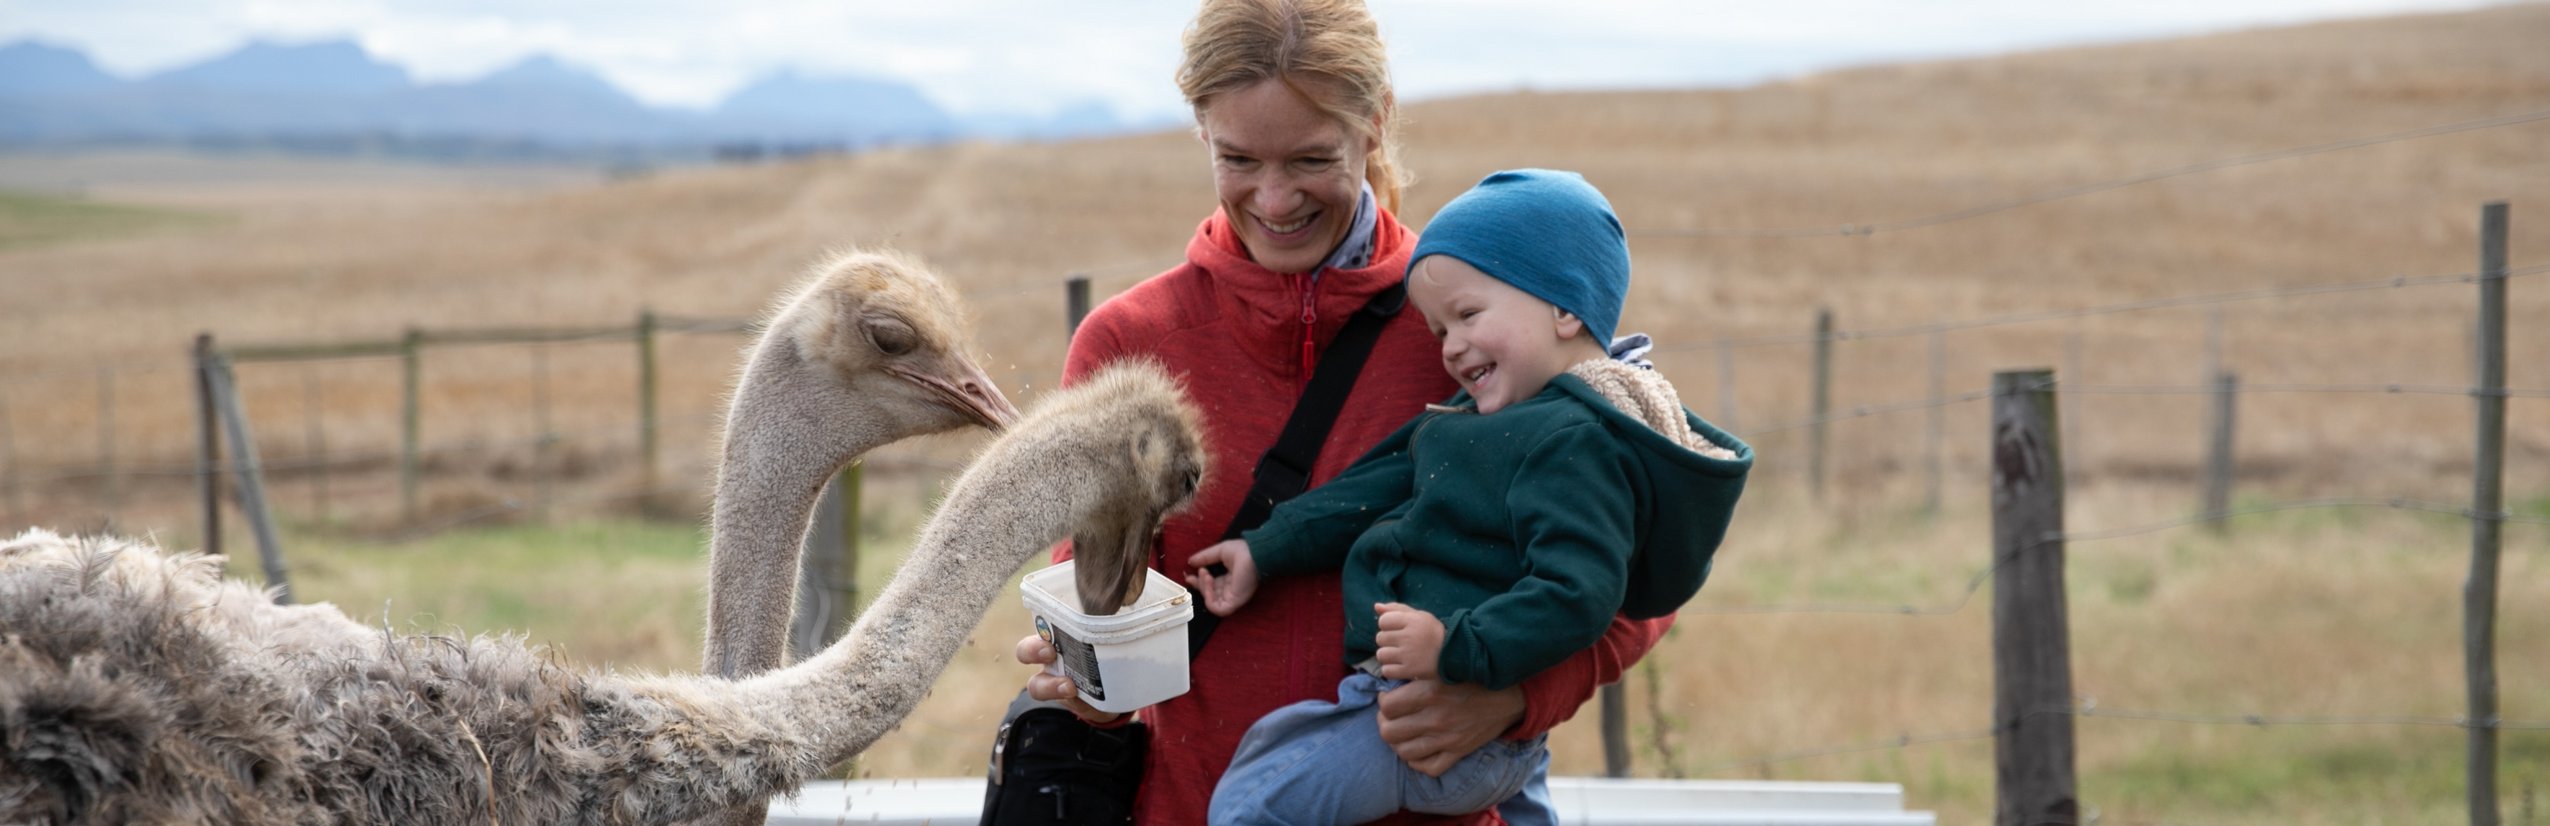 Urlaub mit Kleinkind - Reisen mit Kleinkindern - Fernreise mit Kleinkind - Südafrika Oudtshoorn - Mutter und Sohn füttern Strauß